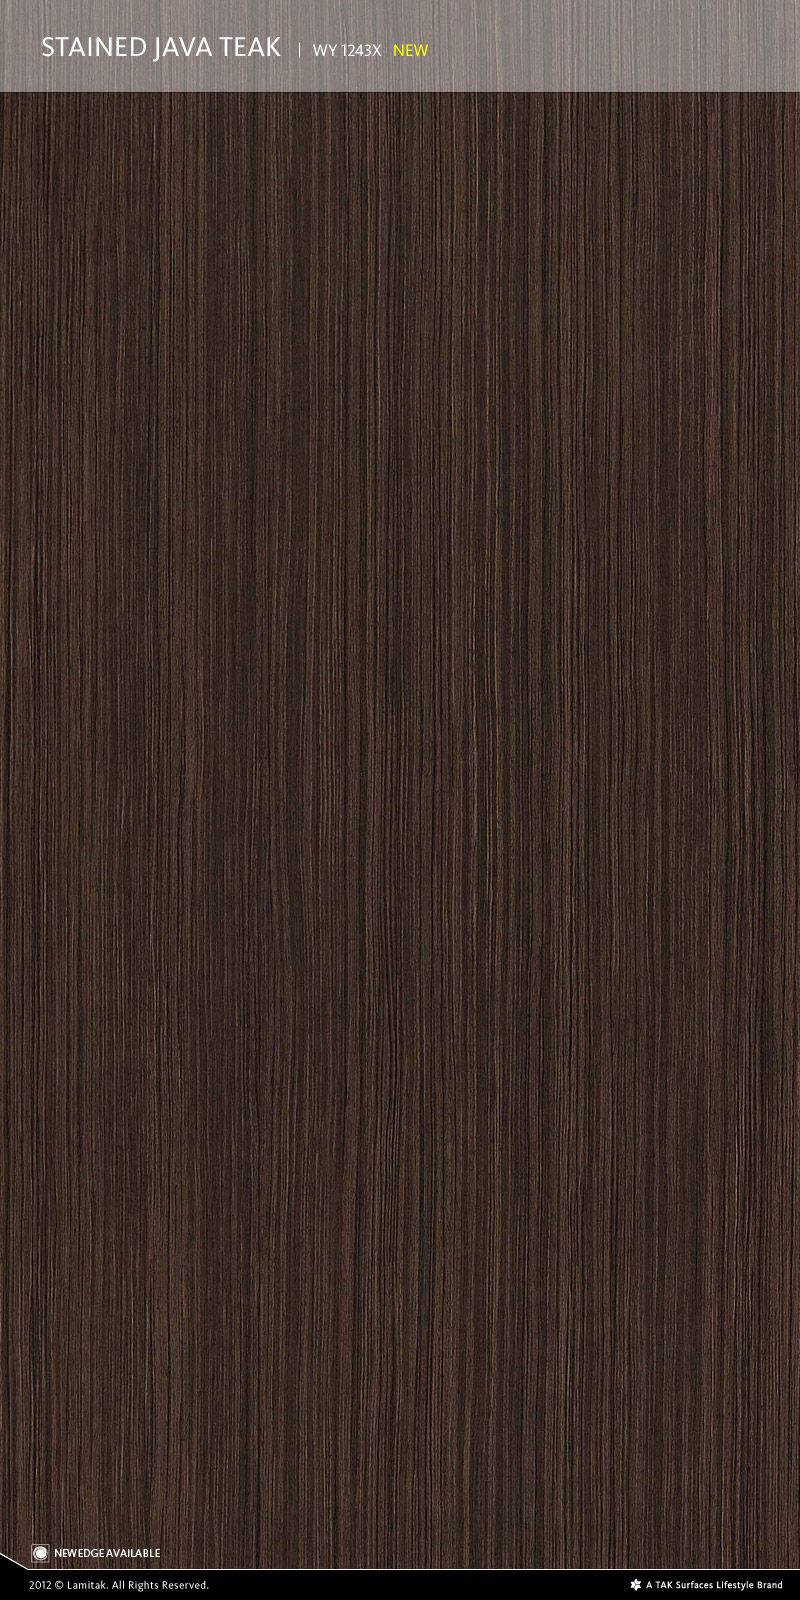 ルイ・ヴィトンの壁紙,褐色,木材,ラミネートフローリング,キャラメルカラー,フローリング